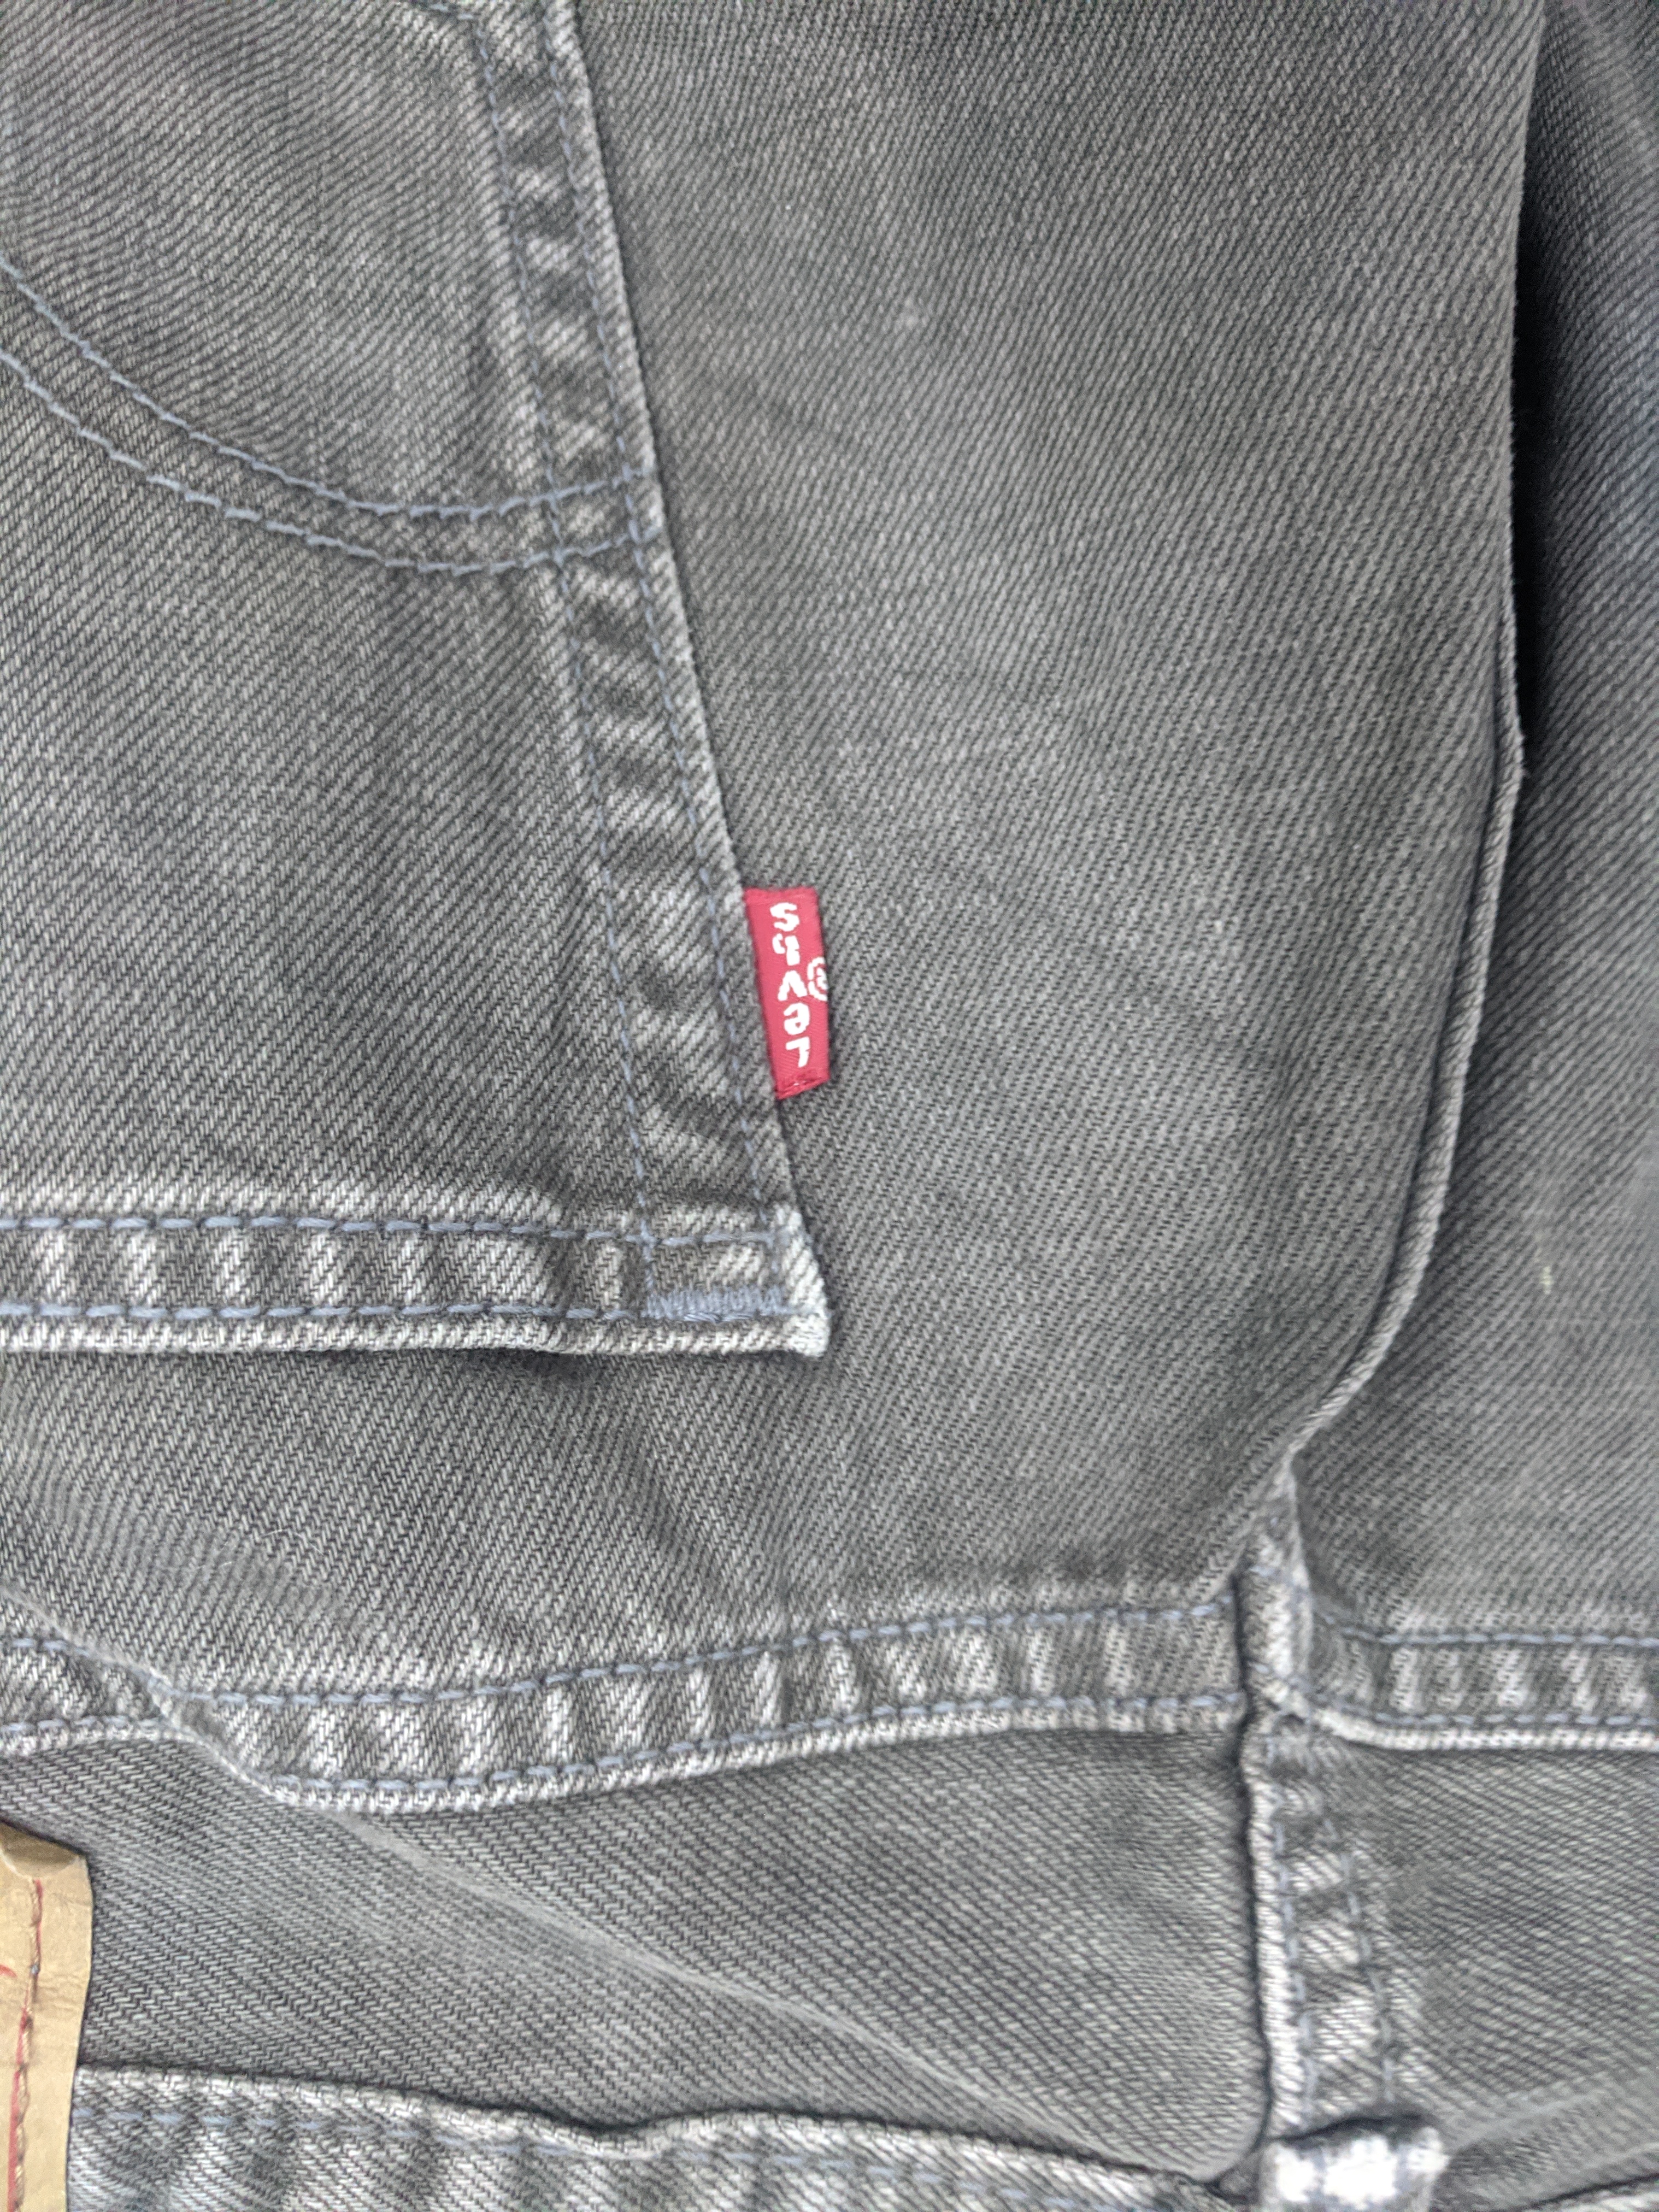 Vintage - Vintage Levis 505 Light Wash Jeans - 13